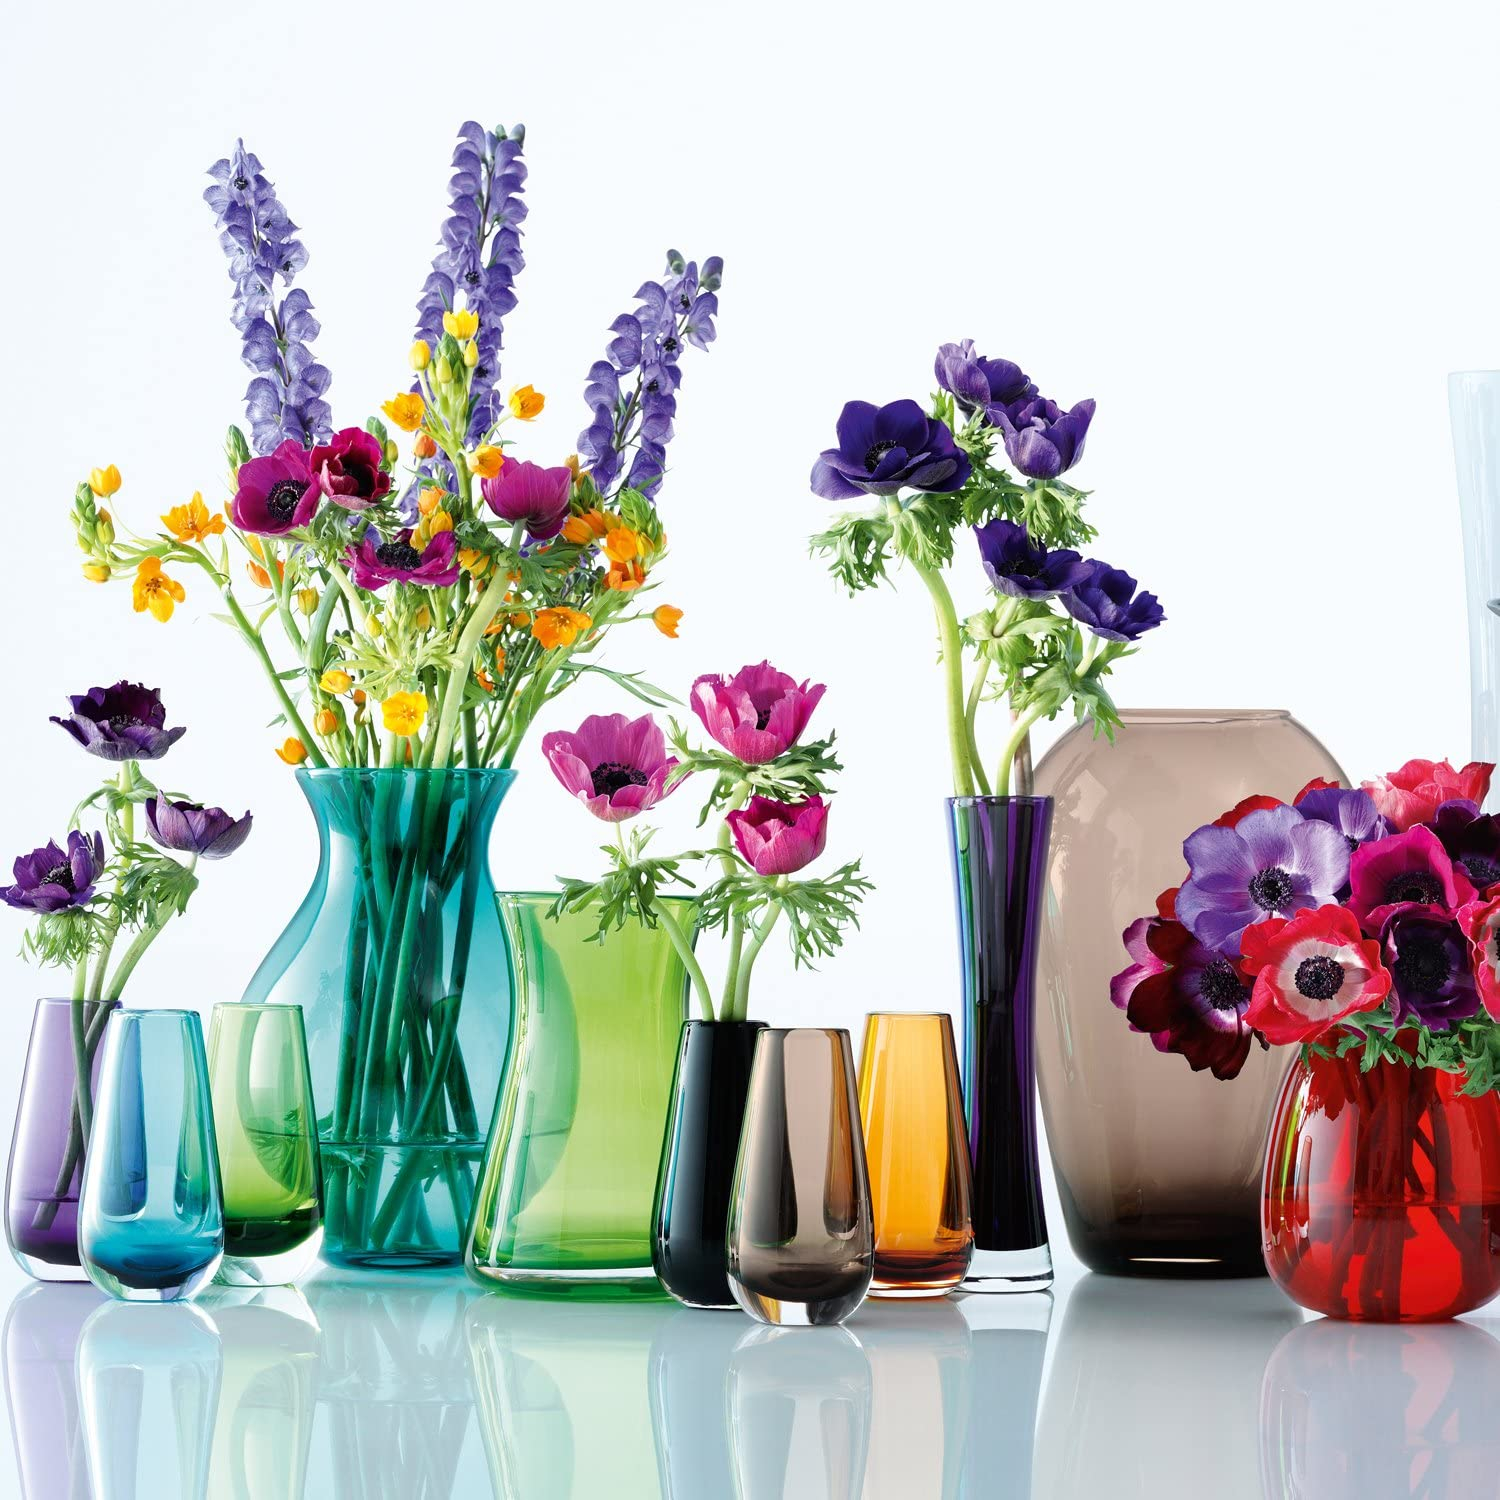 Обои в стиле вазы. Дизайнерские вазы для интерьера. Стеклянные вазы для декора. Стеклянная ваза с цветочками. Стильные вазы для цветов в интерьере.